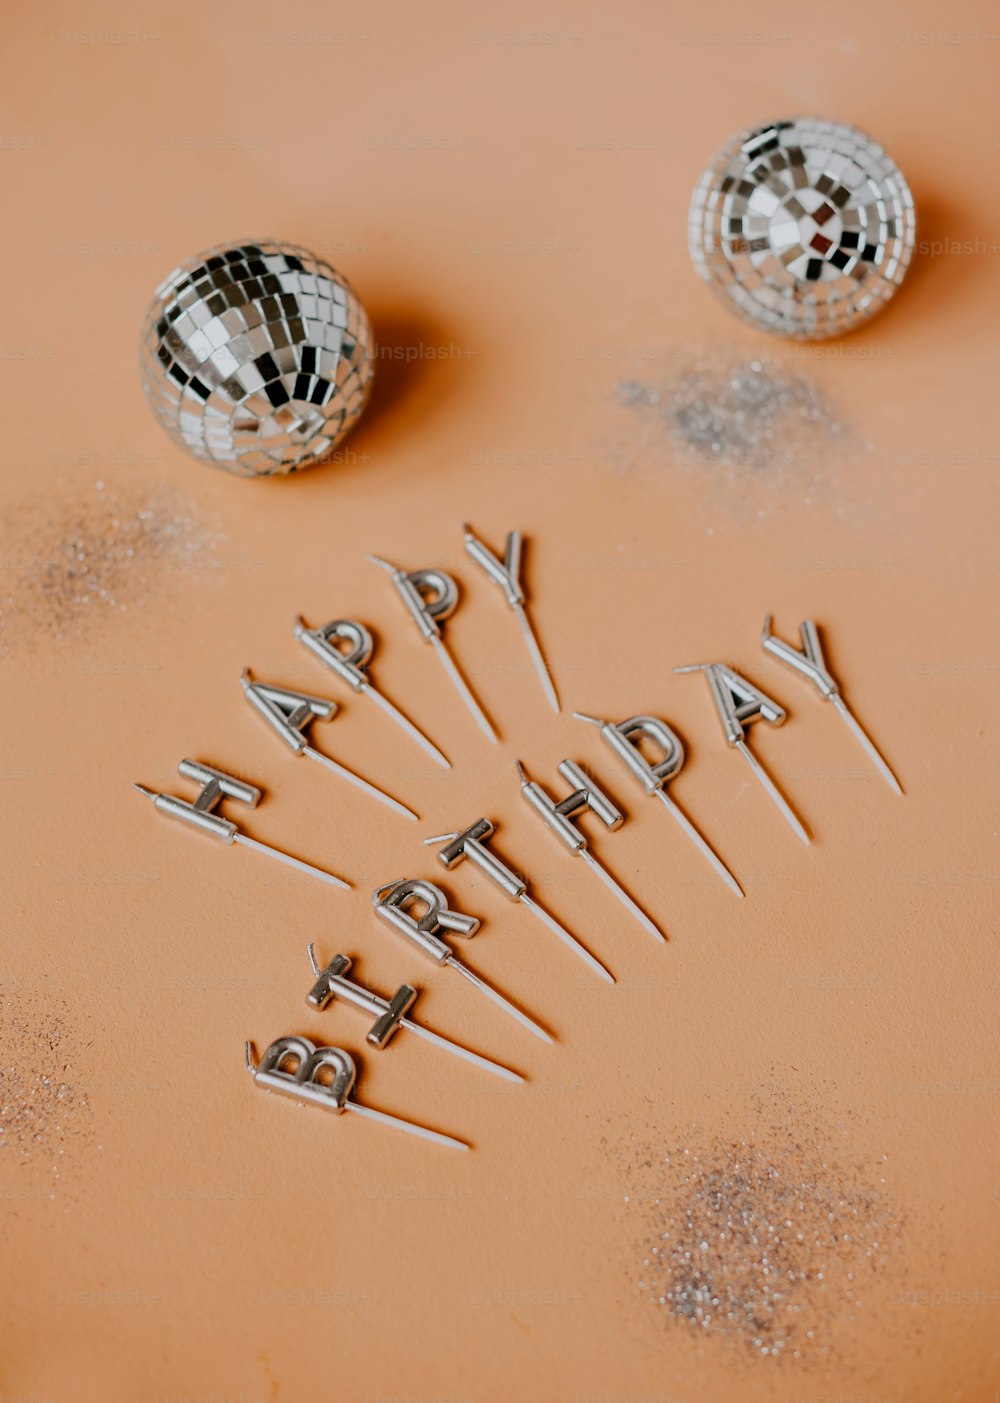 Un gâteau d’anniversaire avec une boule disco et un joyeux anniversaire écrit dessus